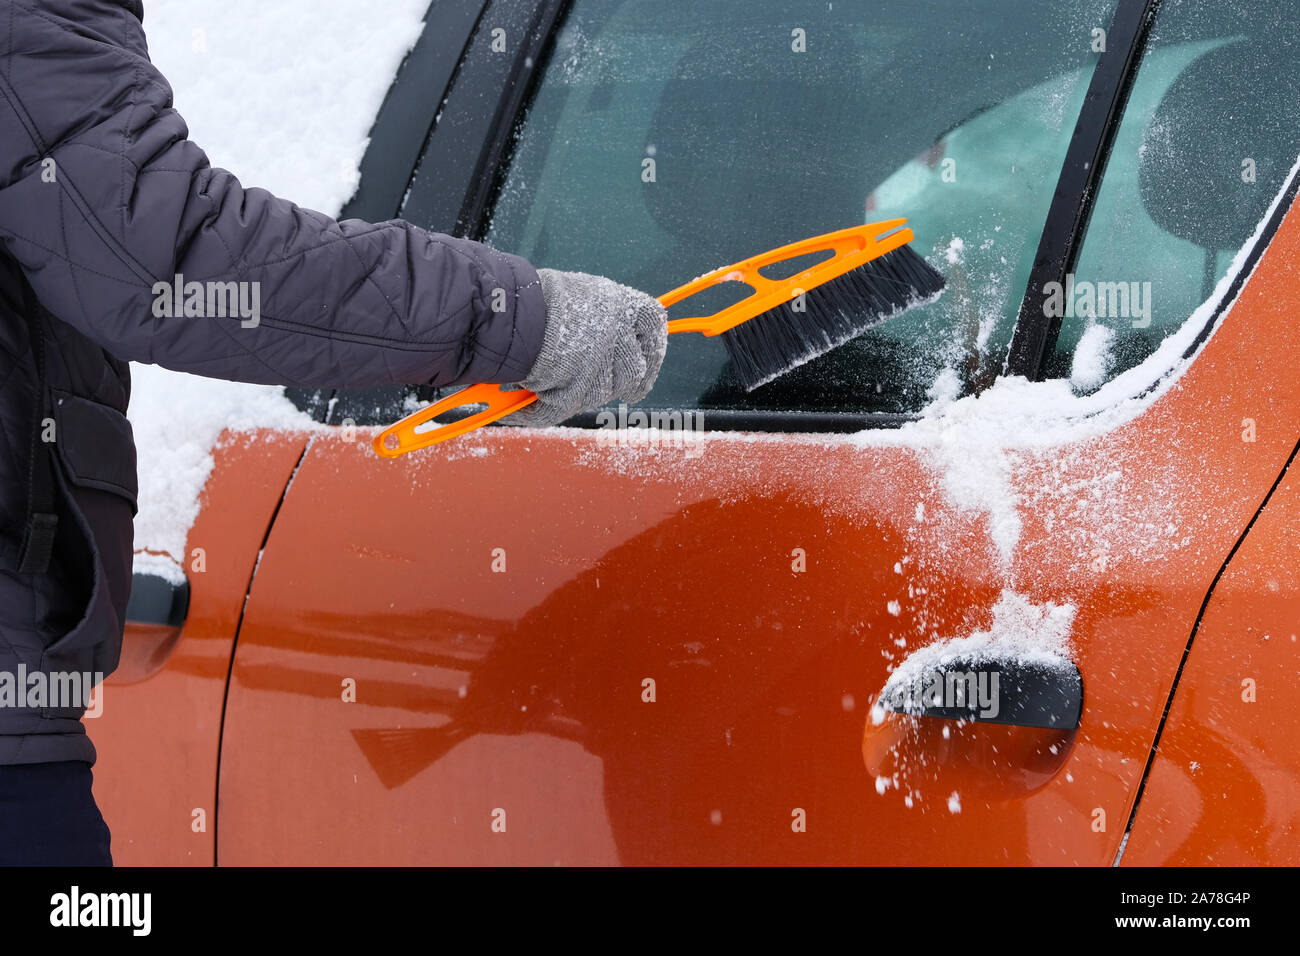 Voiture couverte de neige. L'homme le brossage et pelleter la neige off voiture après une tempête de neige. Pinceau en main. mans Banque D'Images